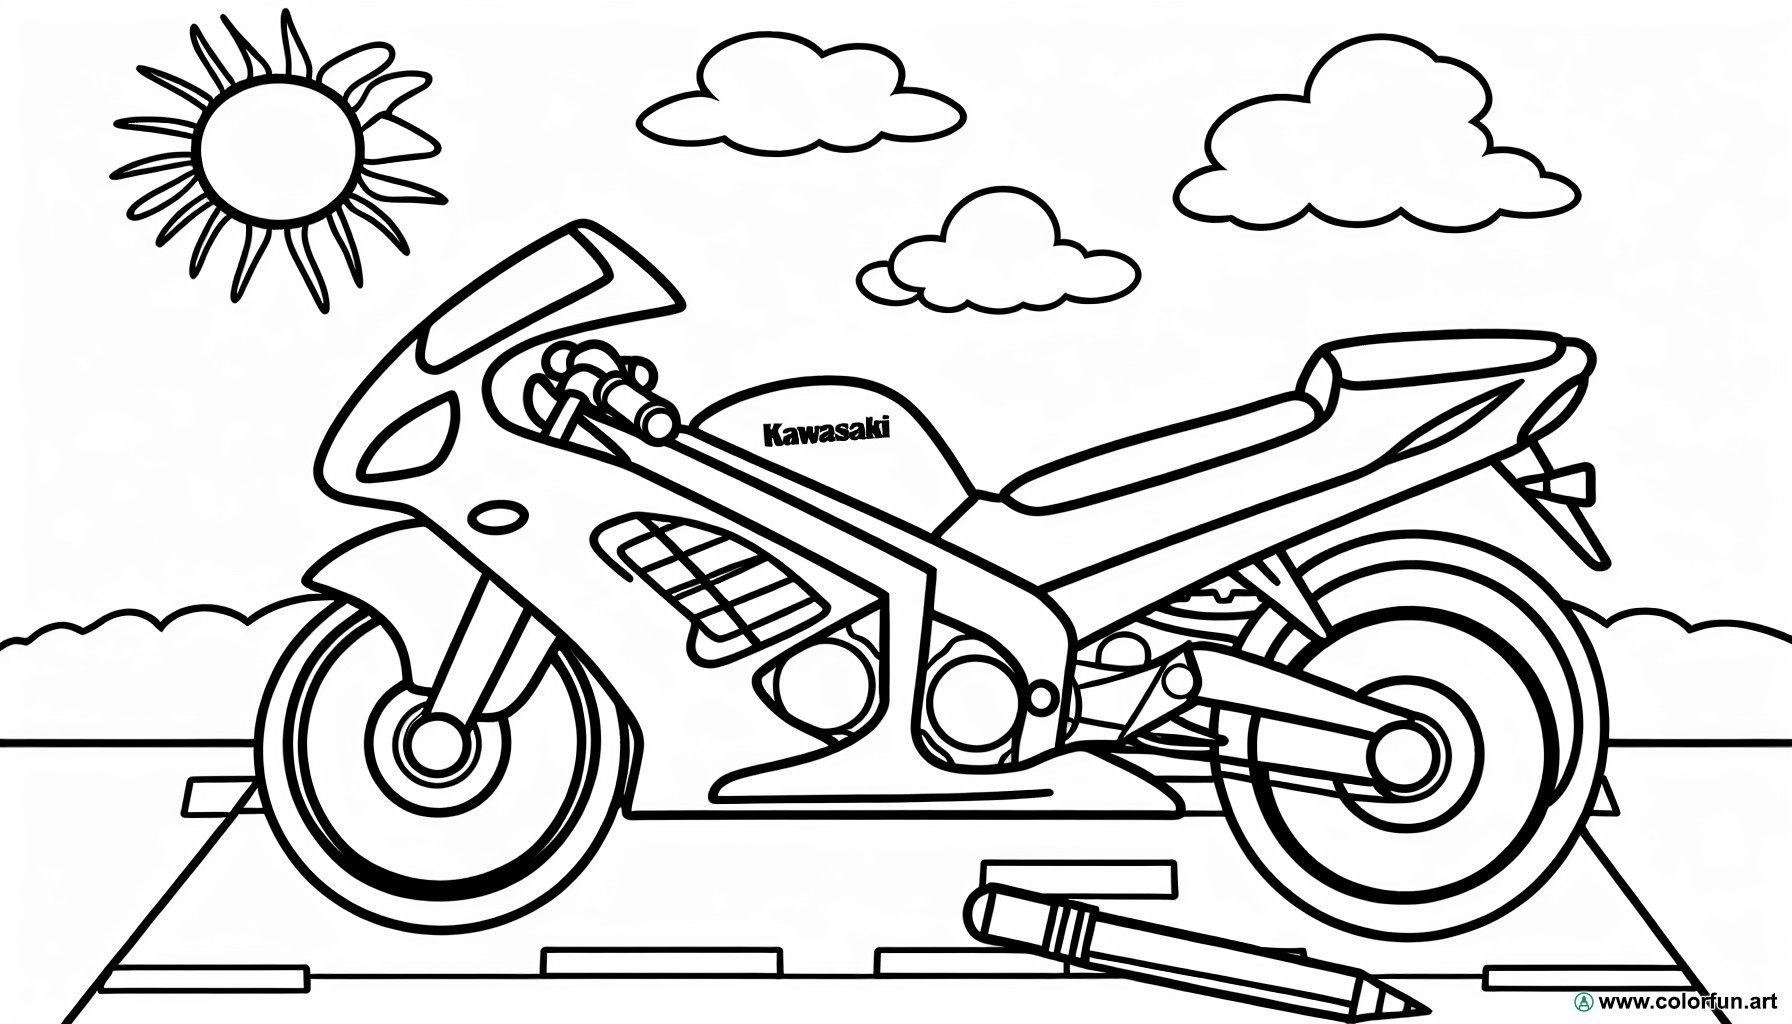 Kawasaki motorcycle coloring page